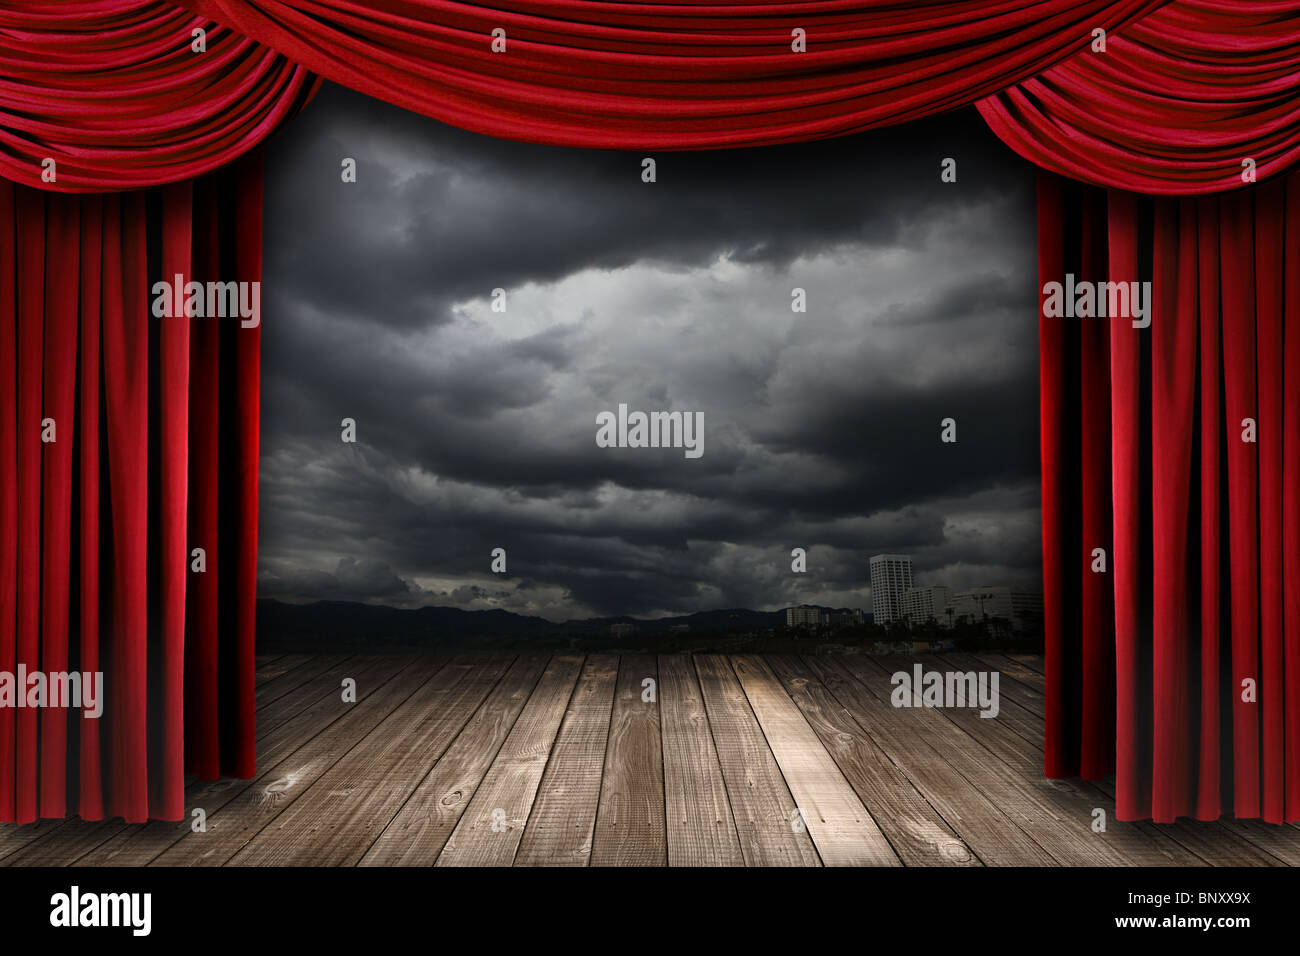 Etapa brillante con cortinas de terciopelo rojo Teatro Dramático y Fondo del Cielo Foto de stock